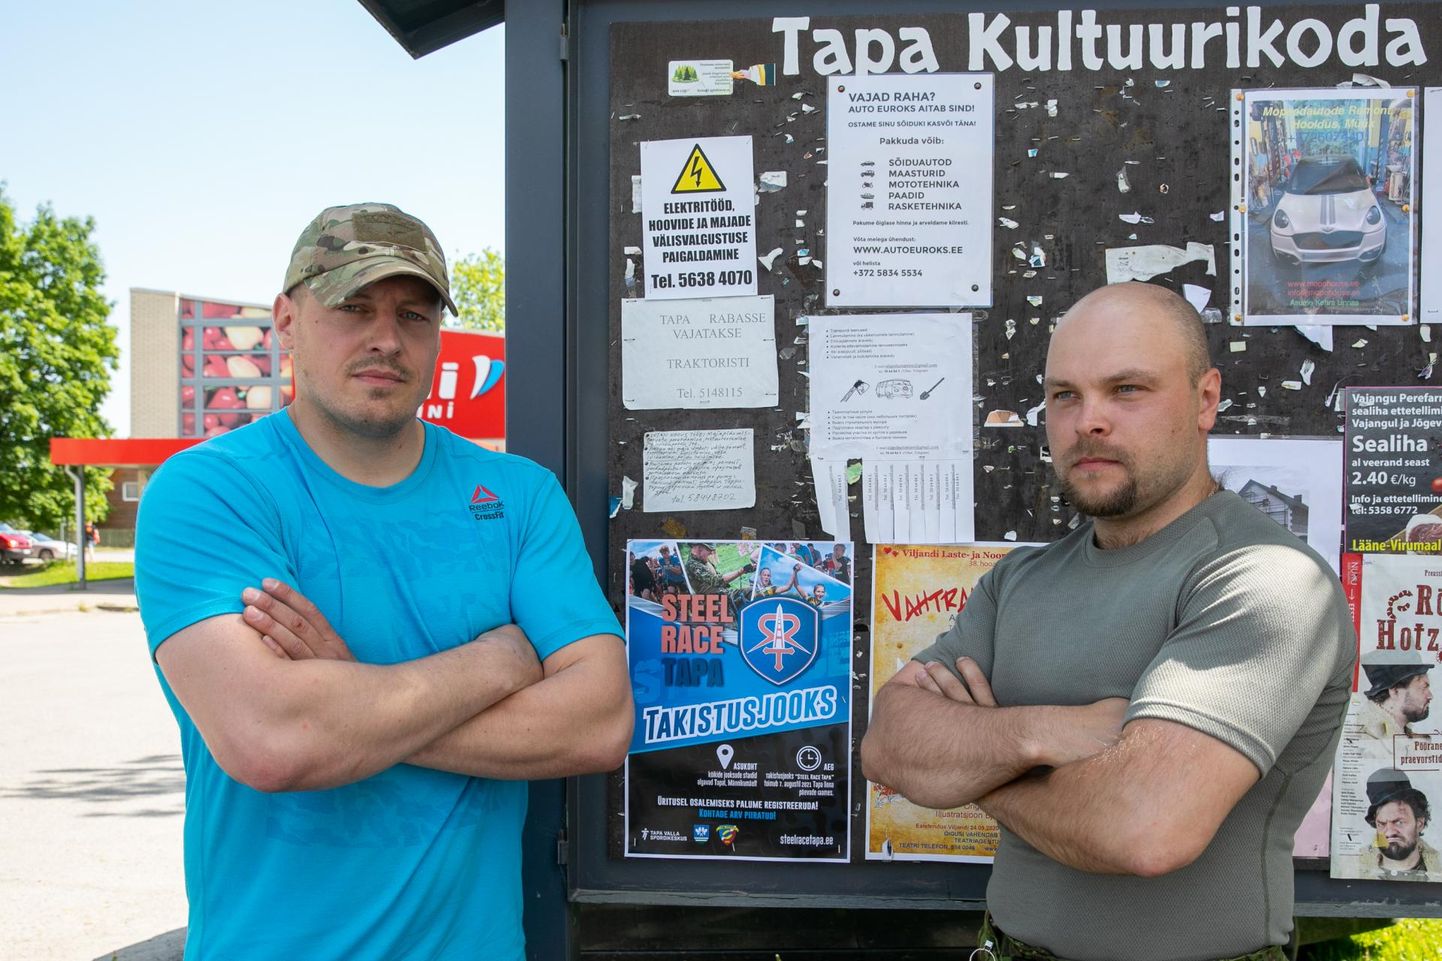 Battle for Tapa senised korraldajad Aleksandr Afanasjev (vasakul) ja Margus Oras leiavad, et omavalitsus on neilt ürituse kaaperdanud, kasutades oma võistluse Steel Race Tapa korraldamiseks nende andmebaase, sidemeid ja infot.